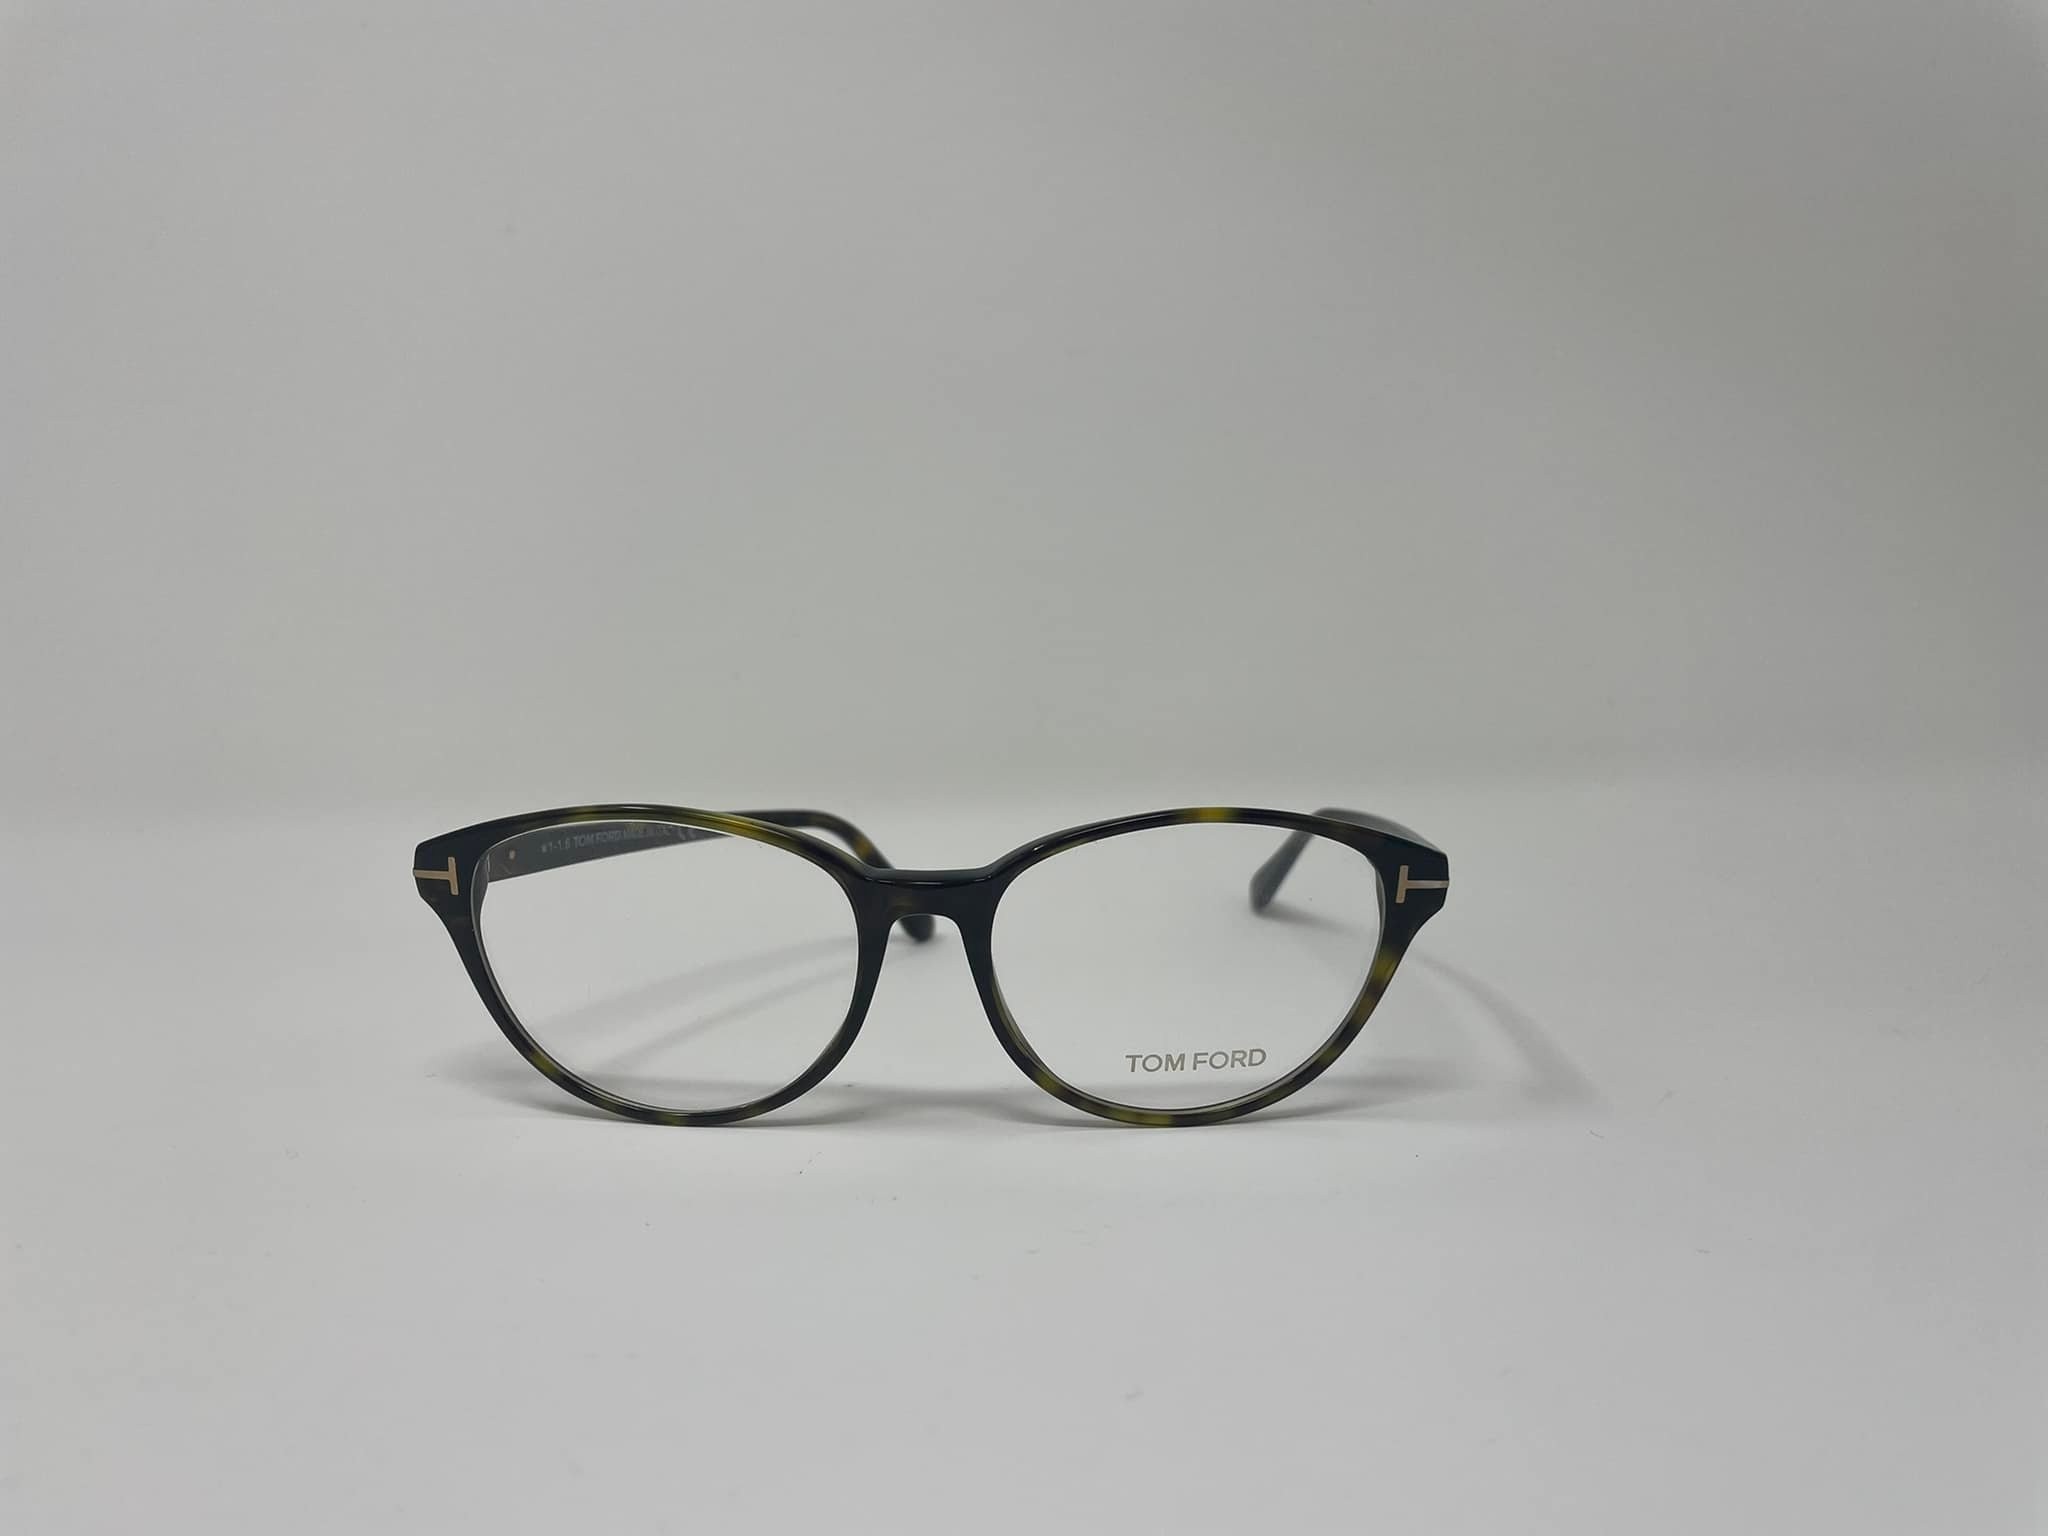 Tom Ford TF 5422 men's eyeglasses